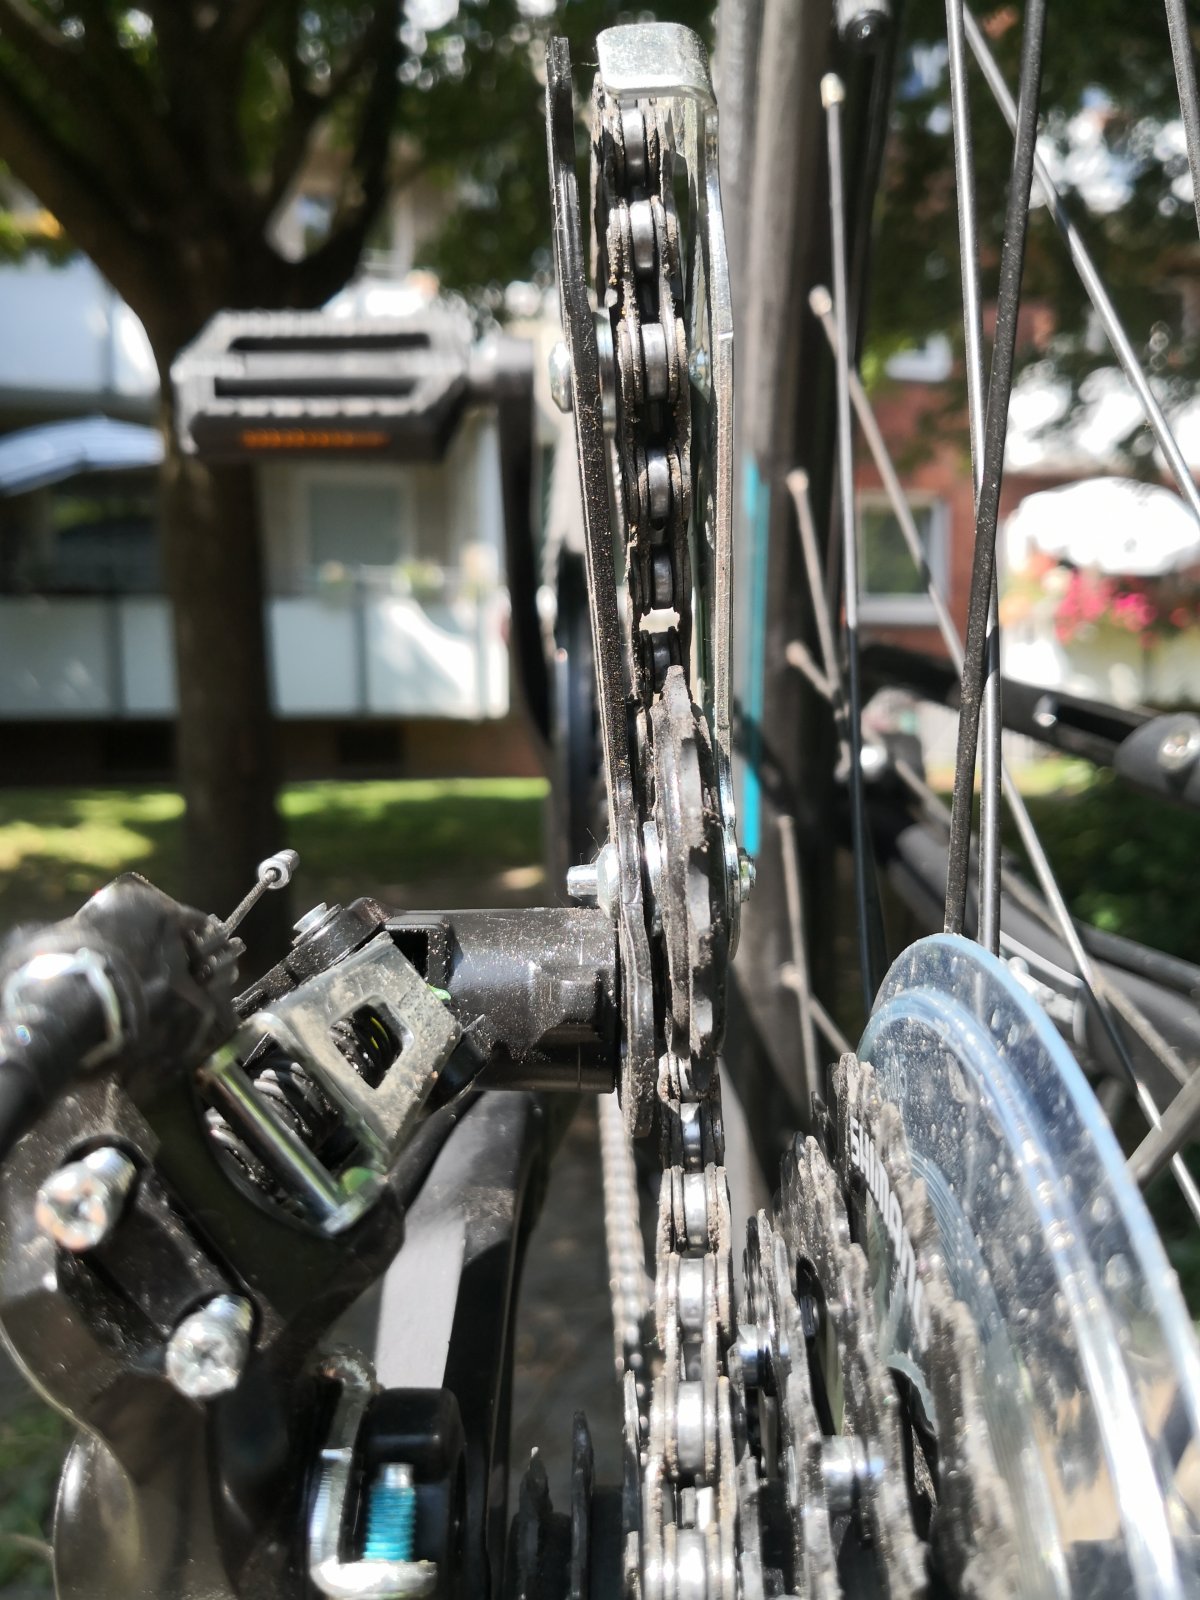 Ganz neues Fahrrad mit Problemen - Schaltwerk kaputt? | MTB-News.de